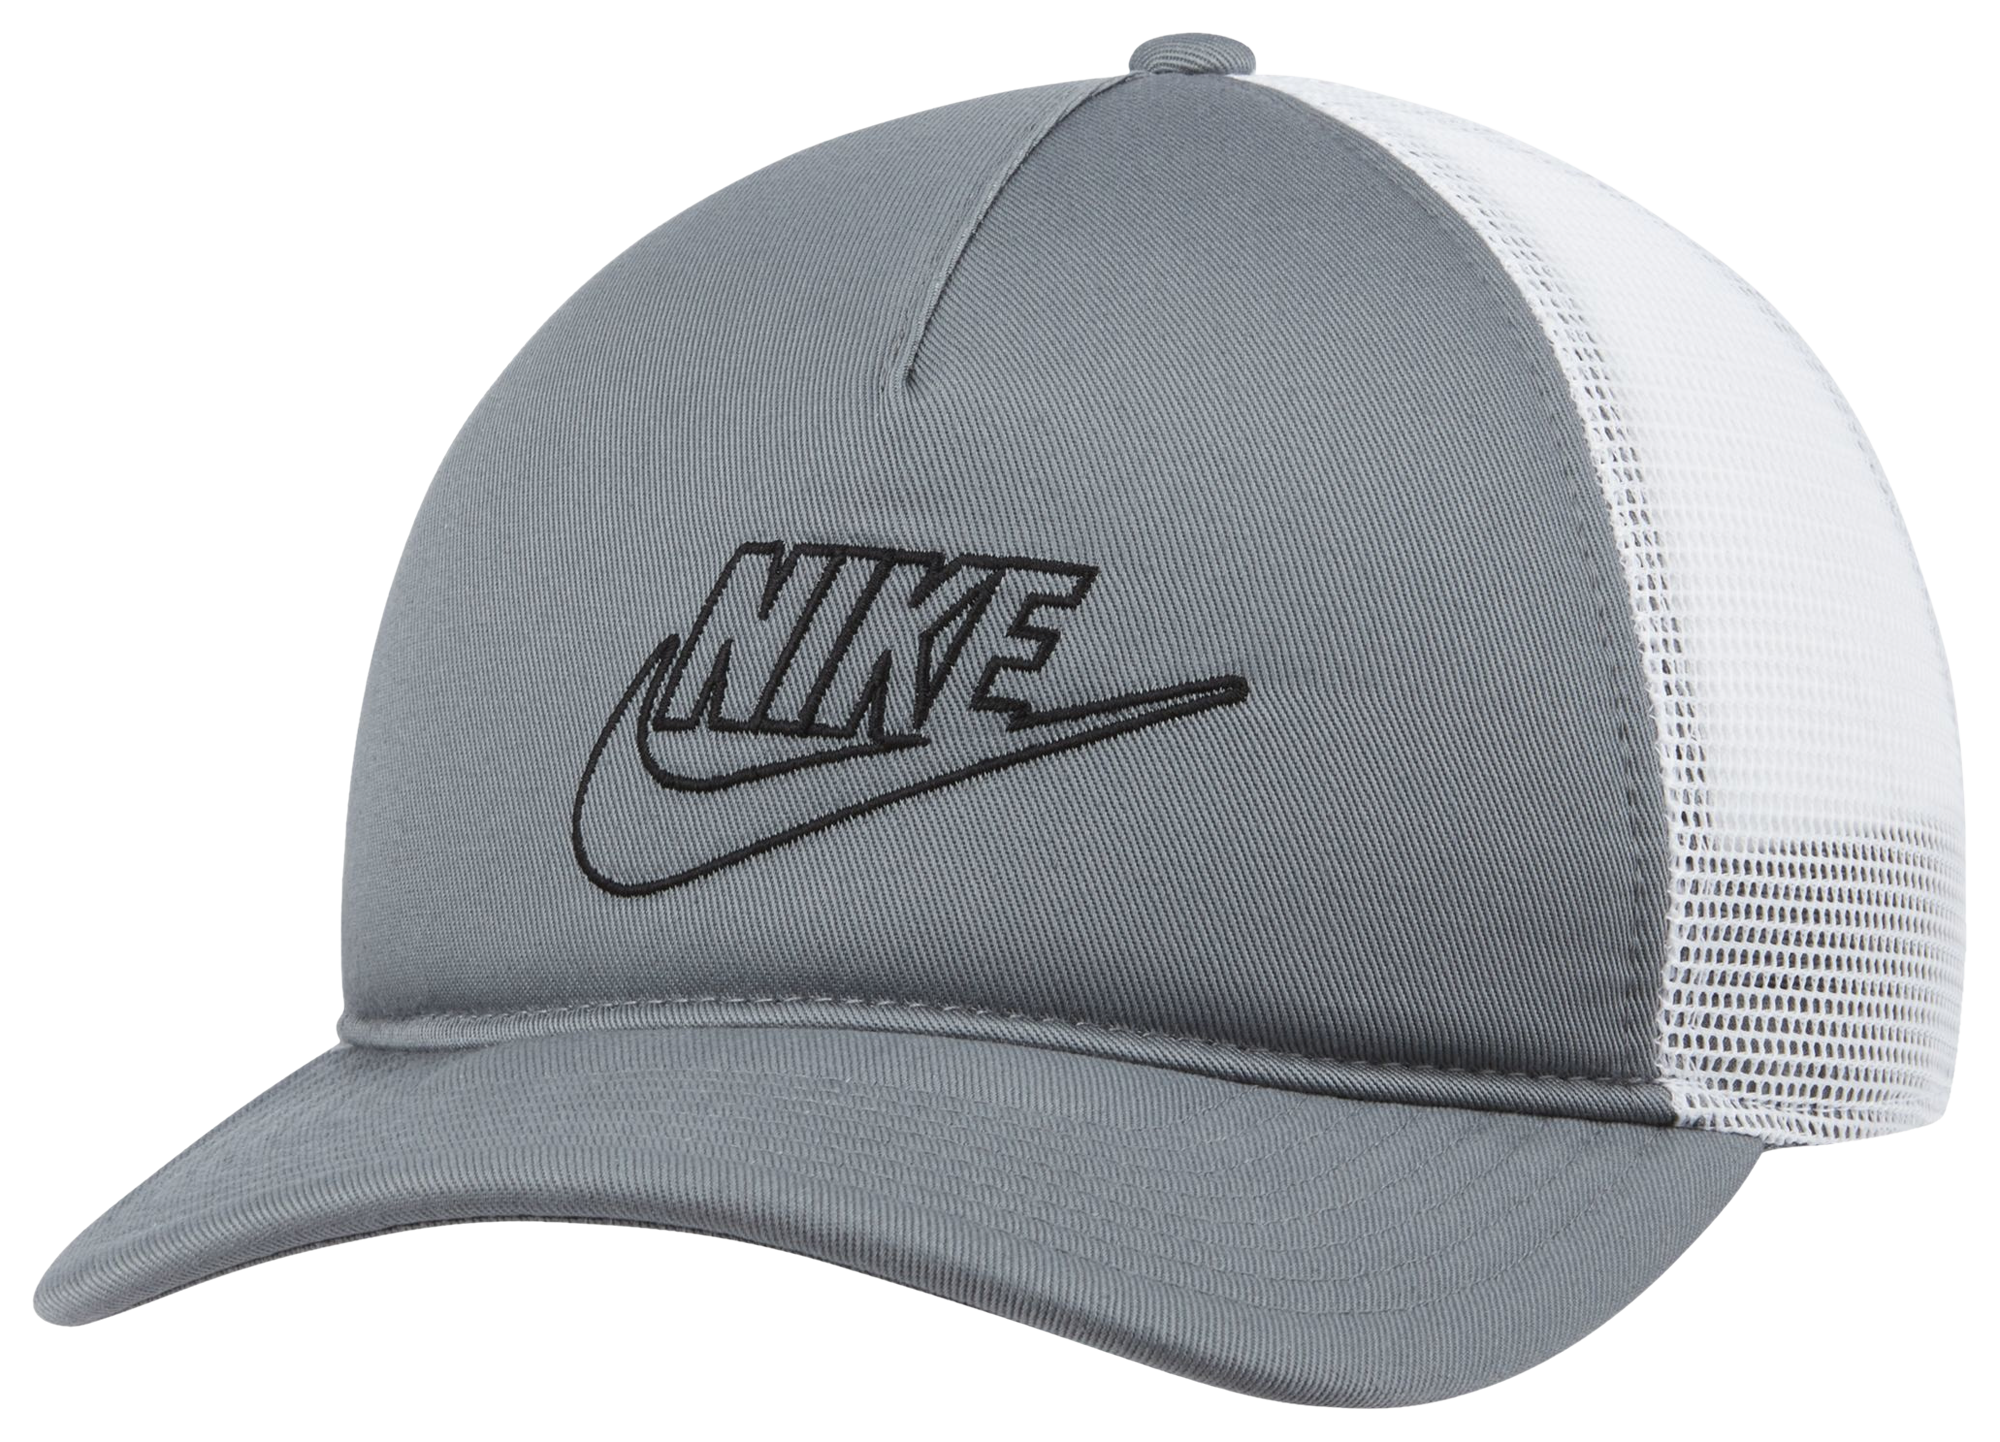 Nike Sportswear Classic 99 Trucker Hat